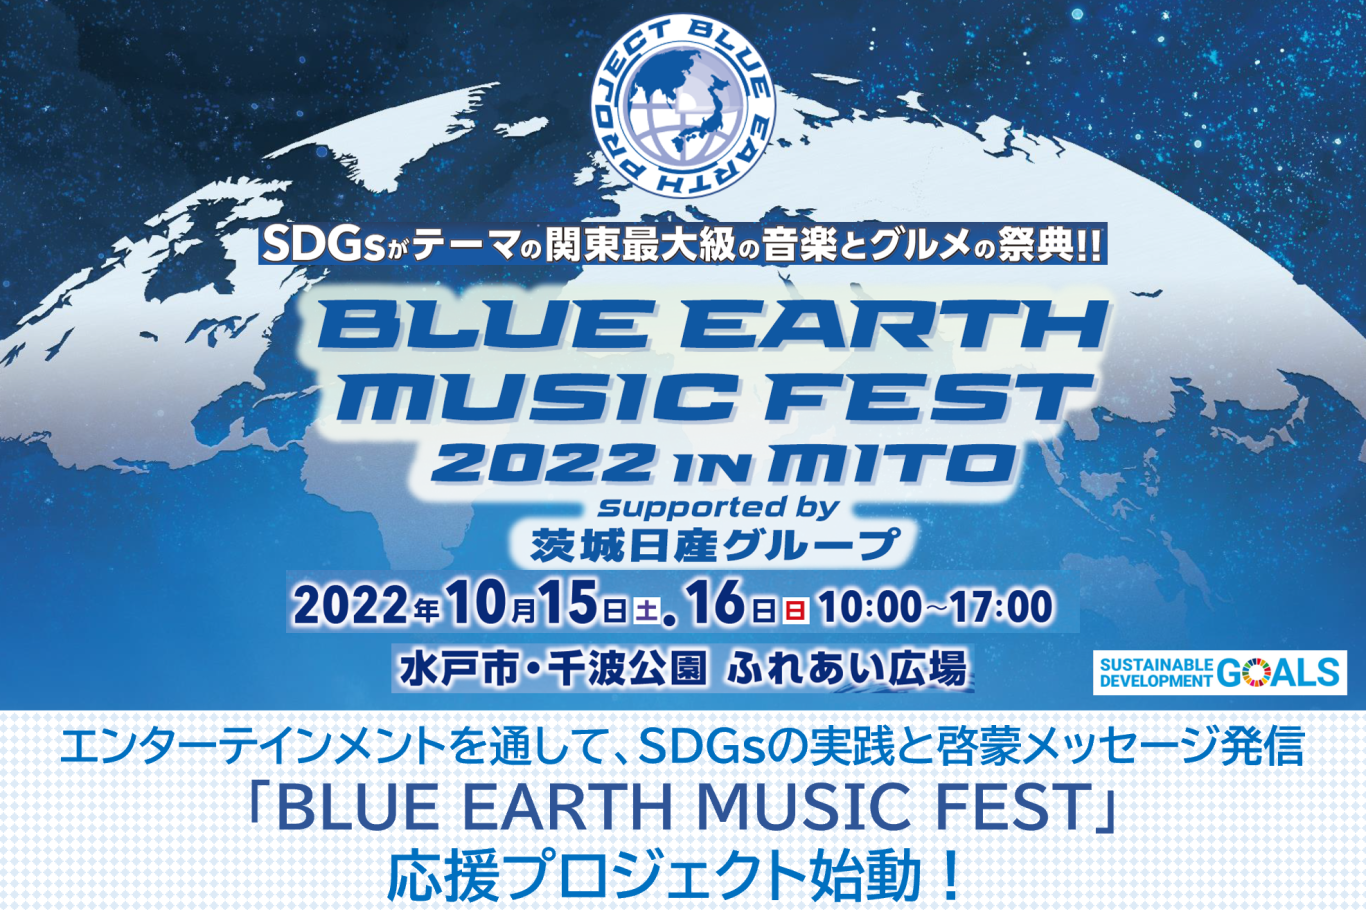 うぶごえ SDGs発信イベント 「BLUE EARTH MUSIC FEST 2022 in MITO supported by 茨城日産